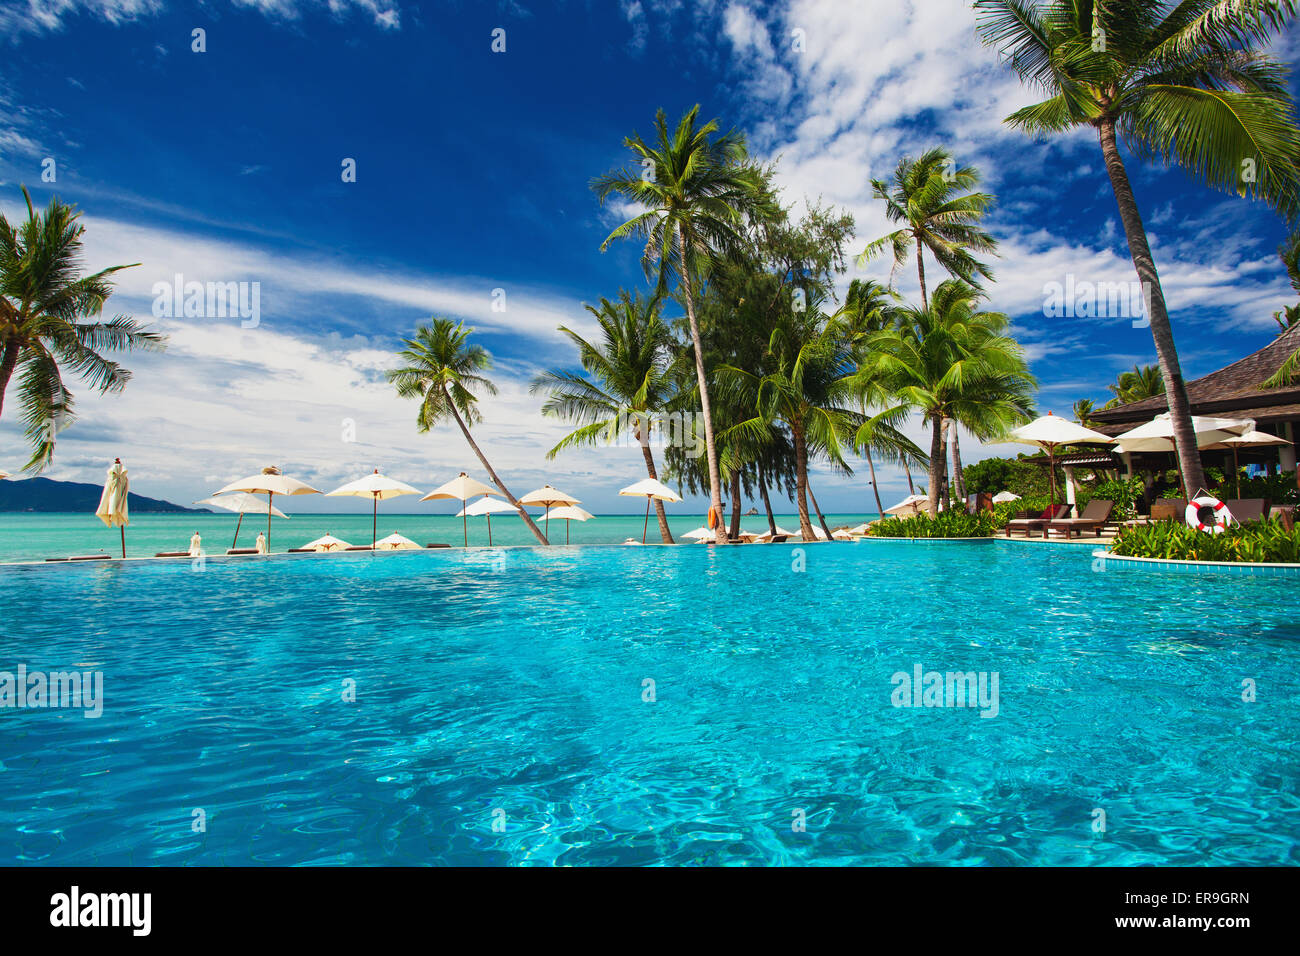 Grande piscina a sfioro sulla spiaggia con palme Foto Stock